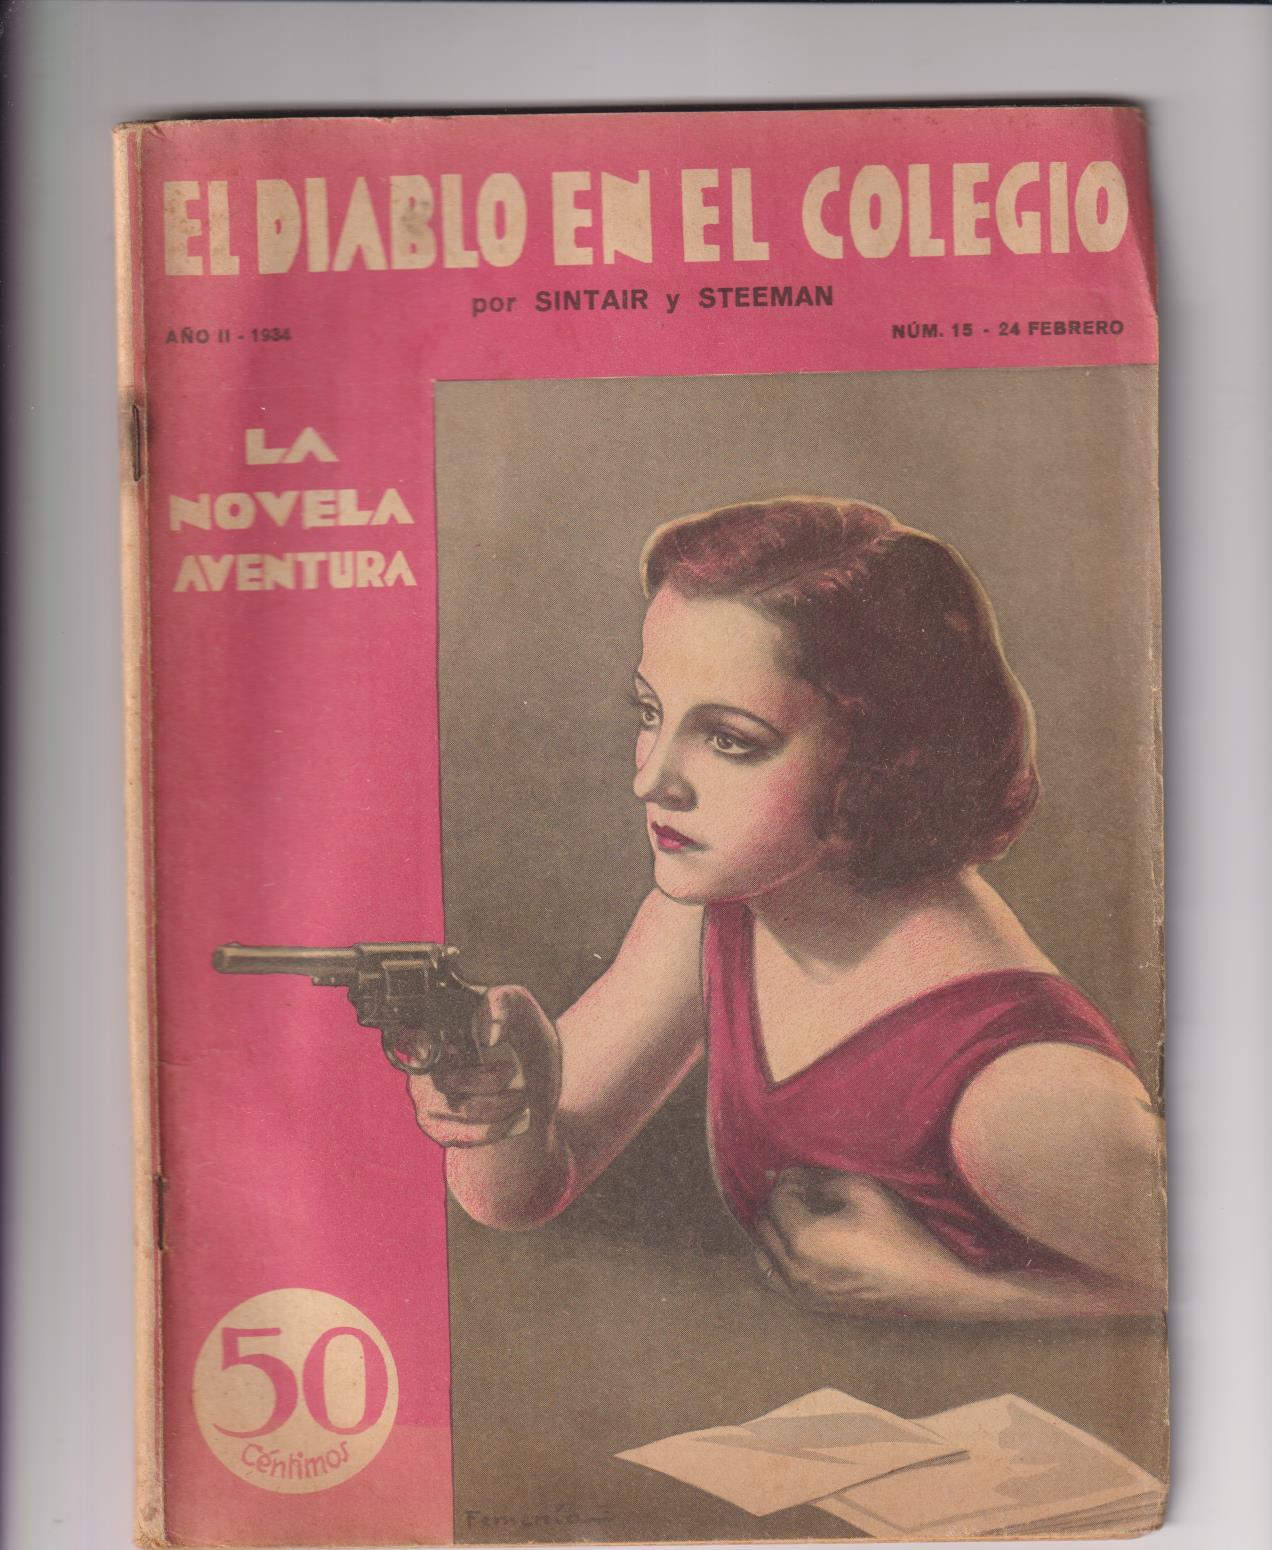 La Novela Aventura nº 15. El diablo en el colegio. 1934